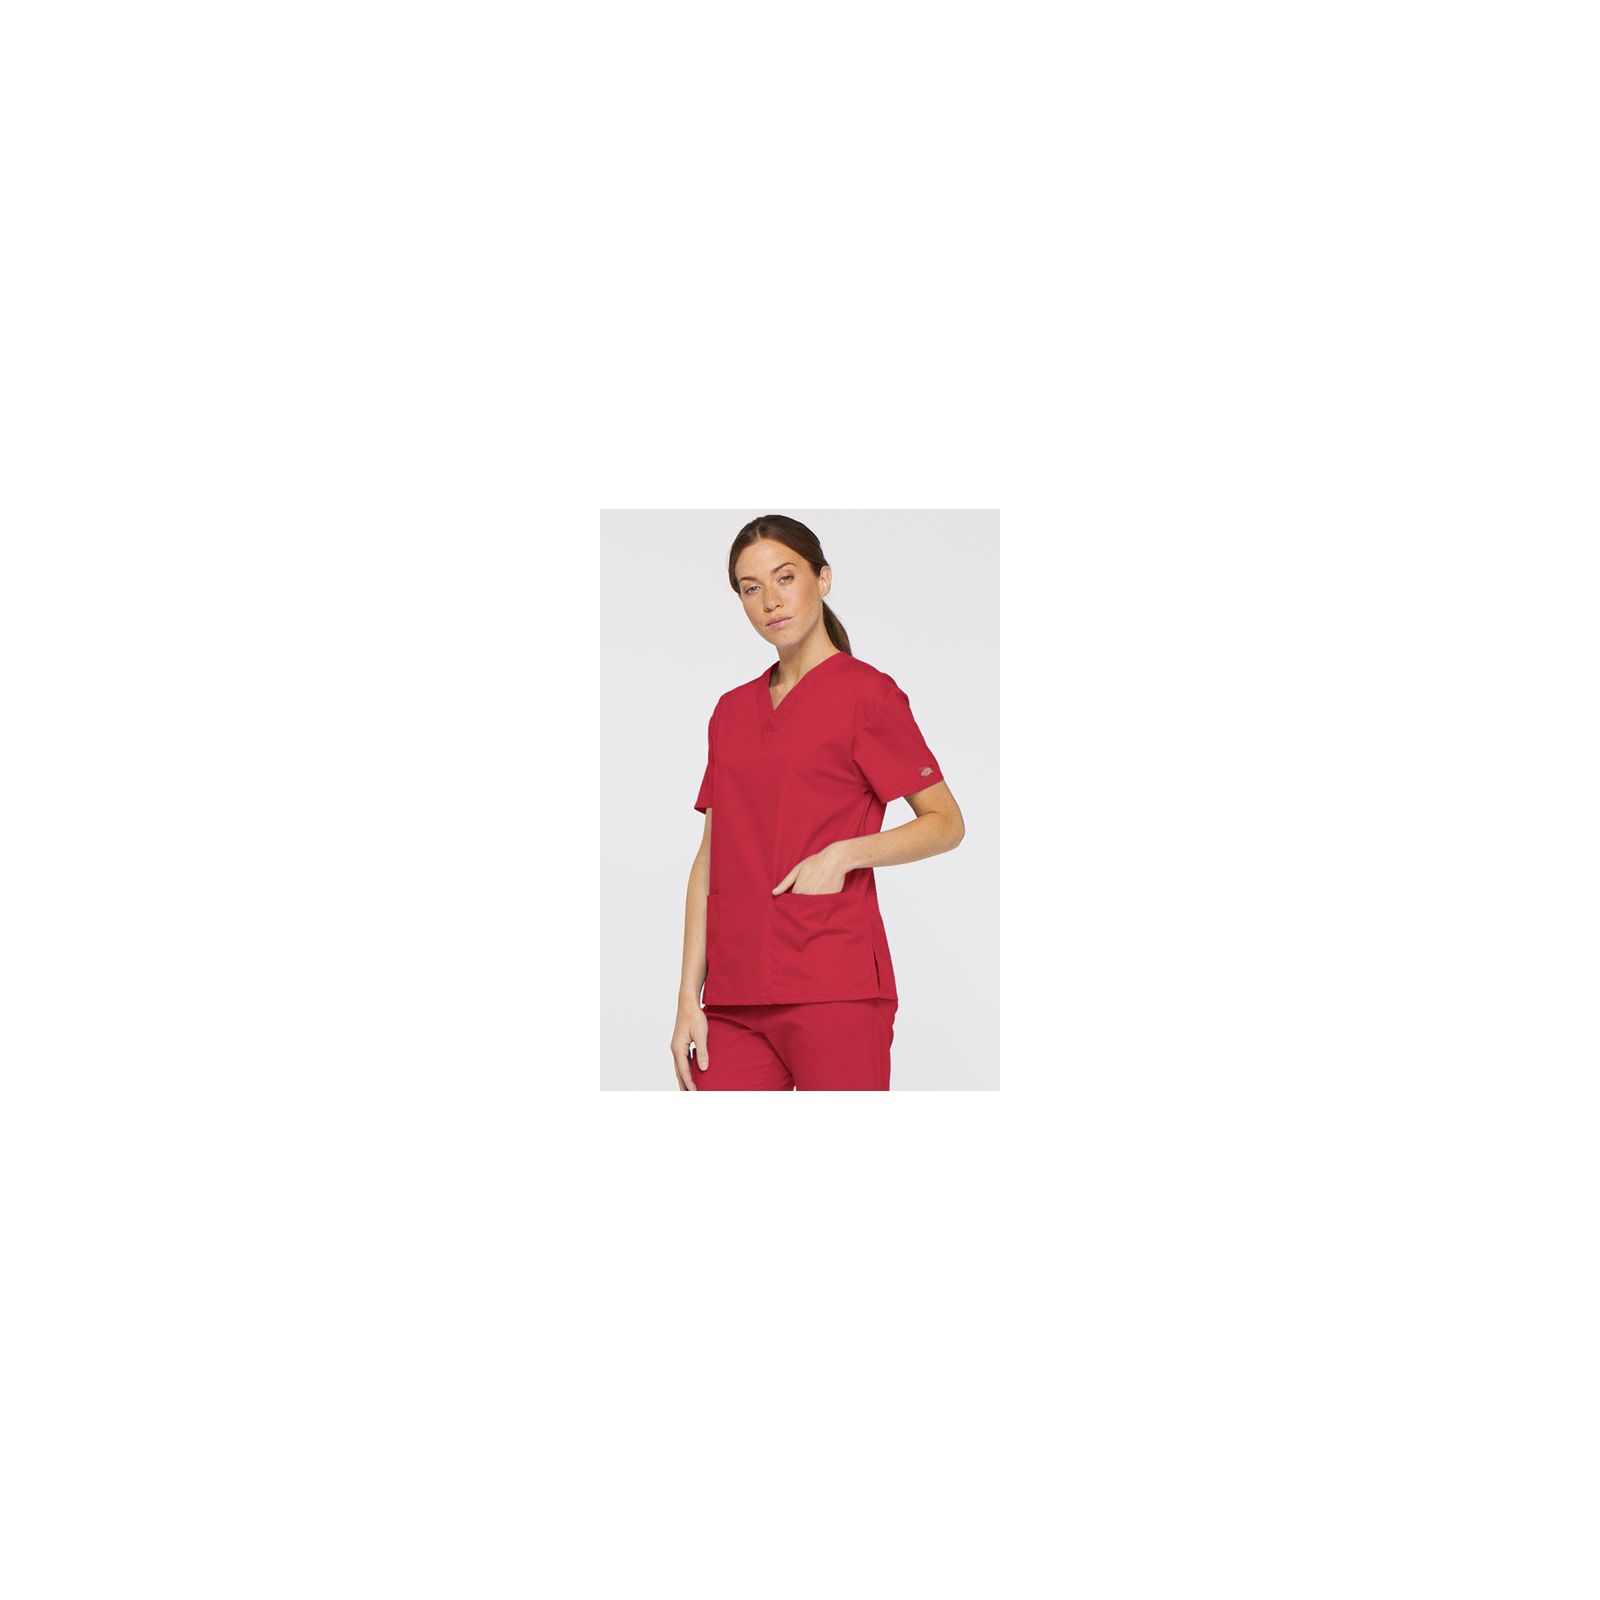 Blouse médicale Col V Femme, Dickies, 2 poches, Collection "EDS signature" (86706), couleur rouge, vue modèle coté droit